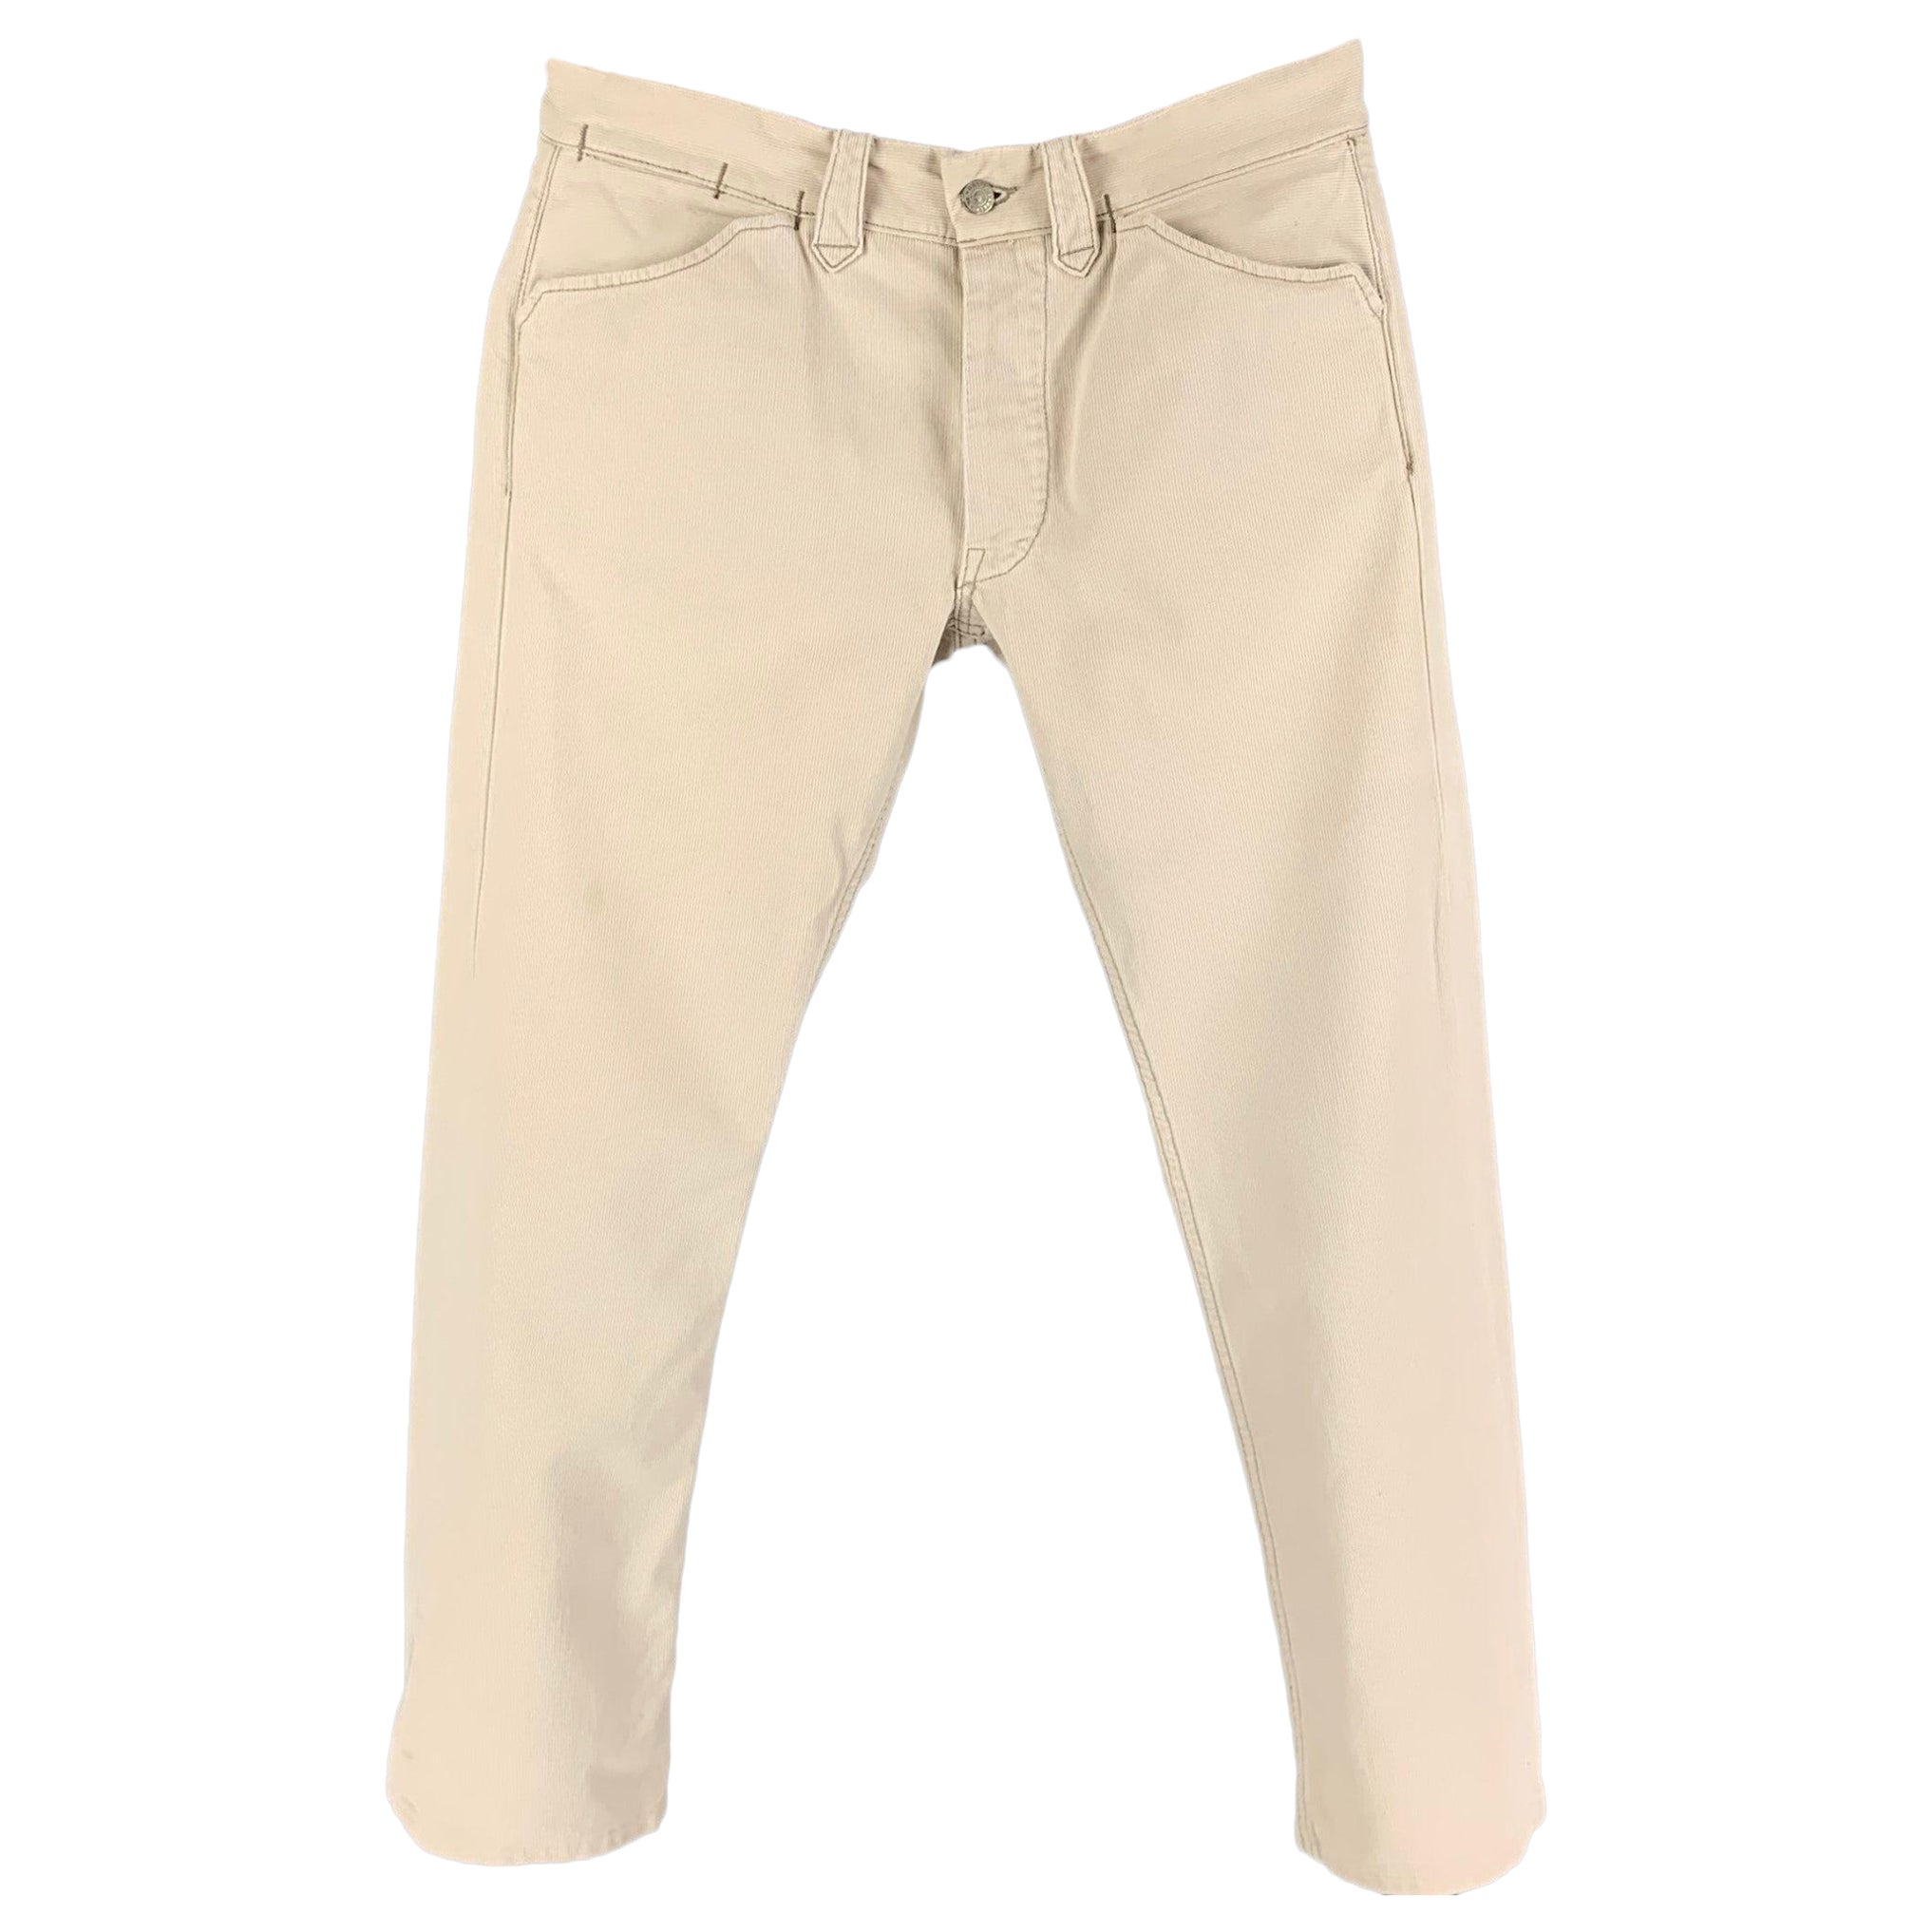 RRL by RALPH LAUREN Size 30 Beige Cotton Jean Cut Casual Pants For Sale